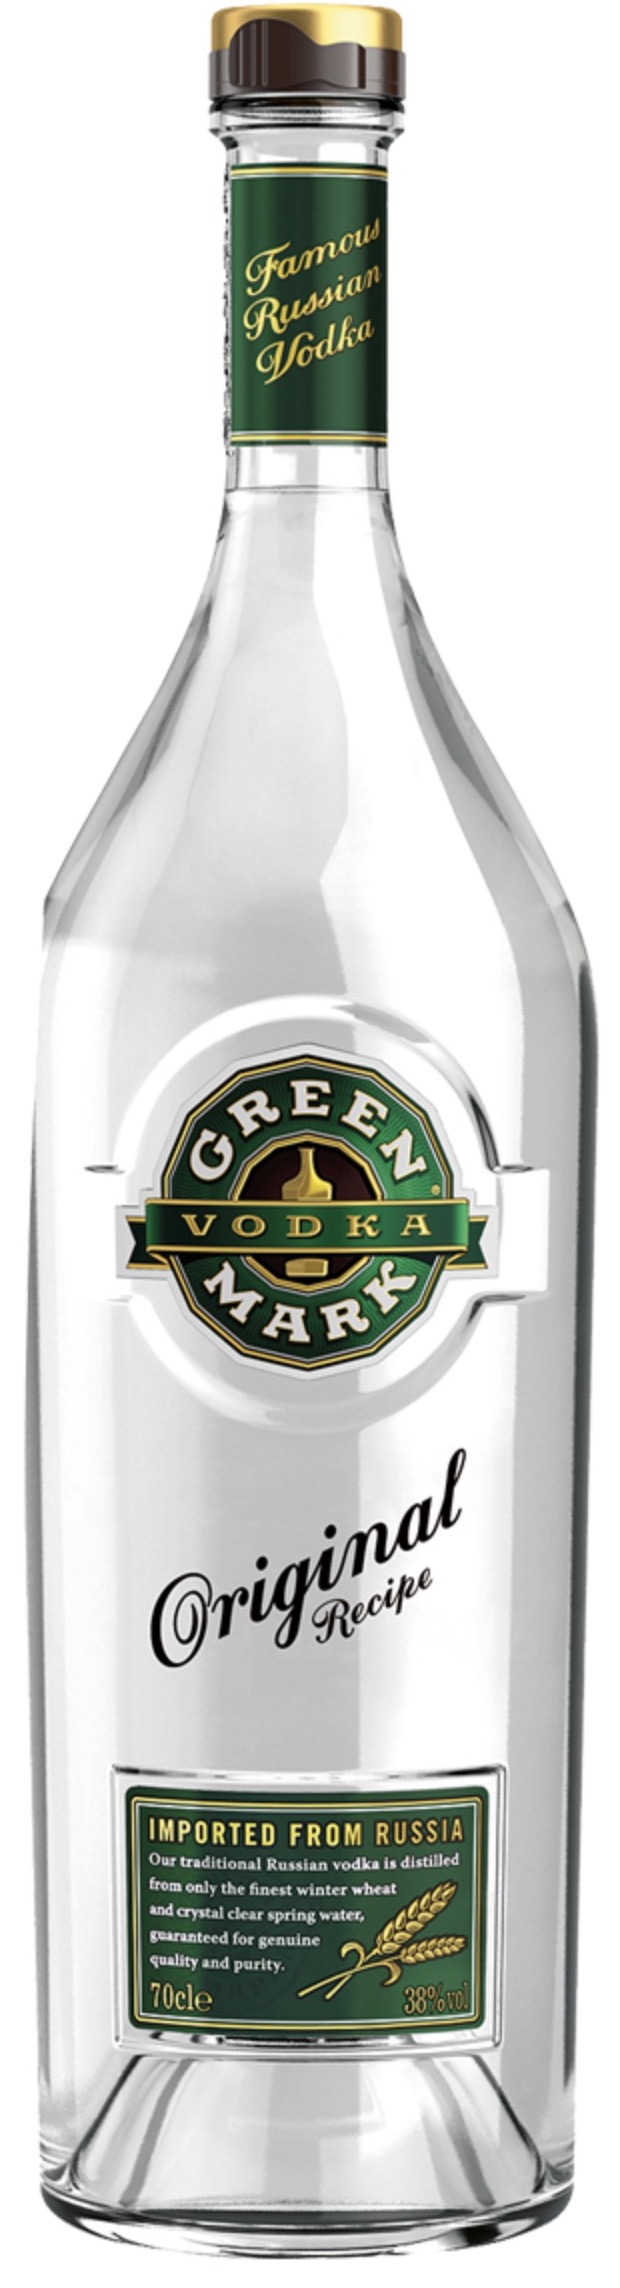 Green Mark Vodka 38% vol. 0,7L